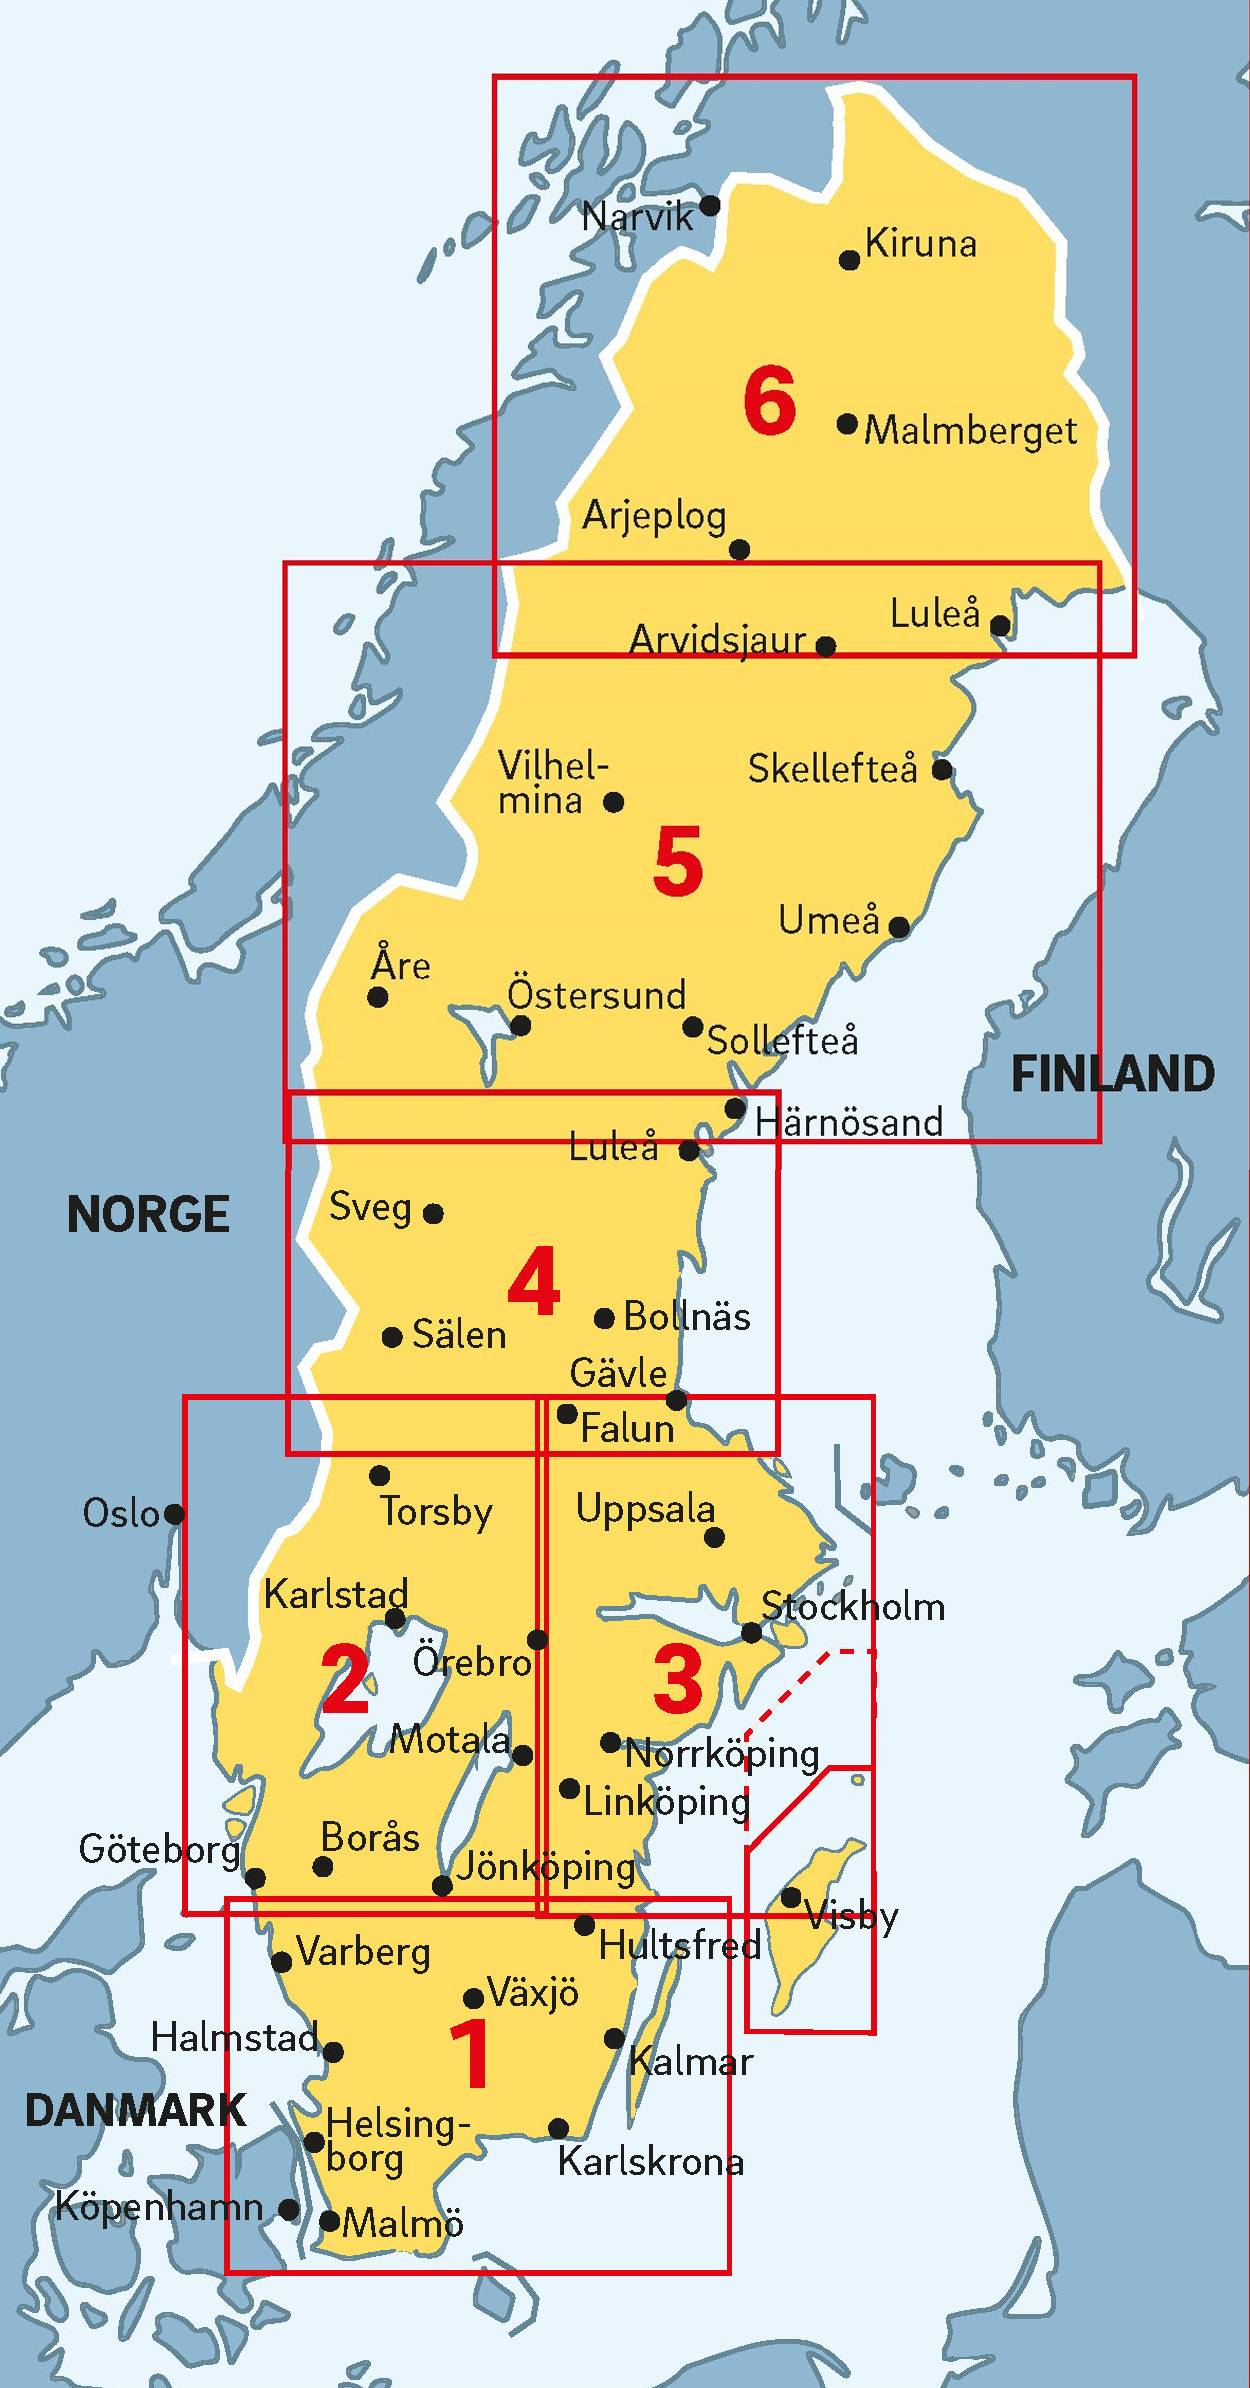 Overzichts Zweden